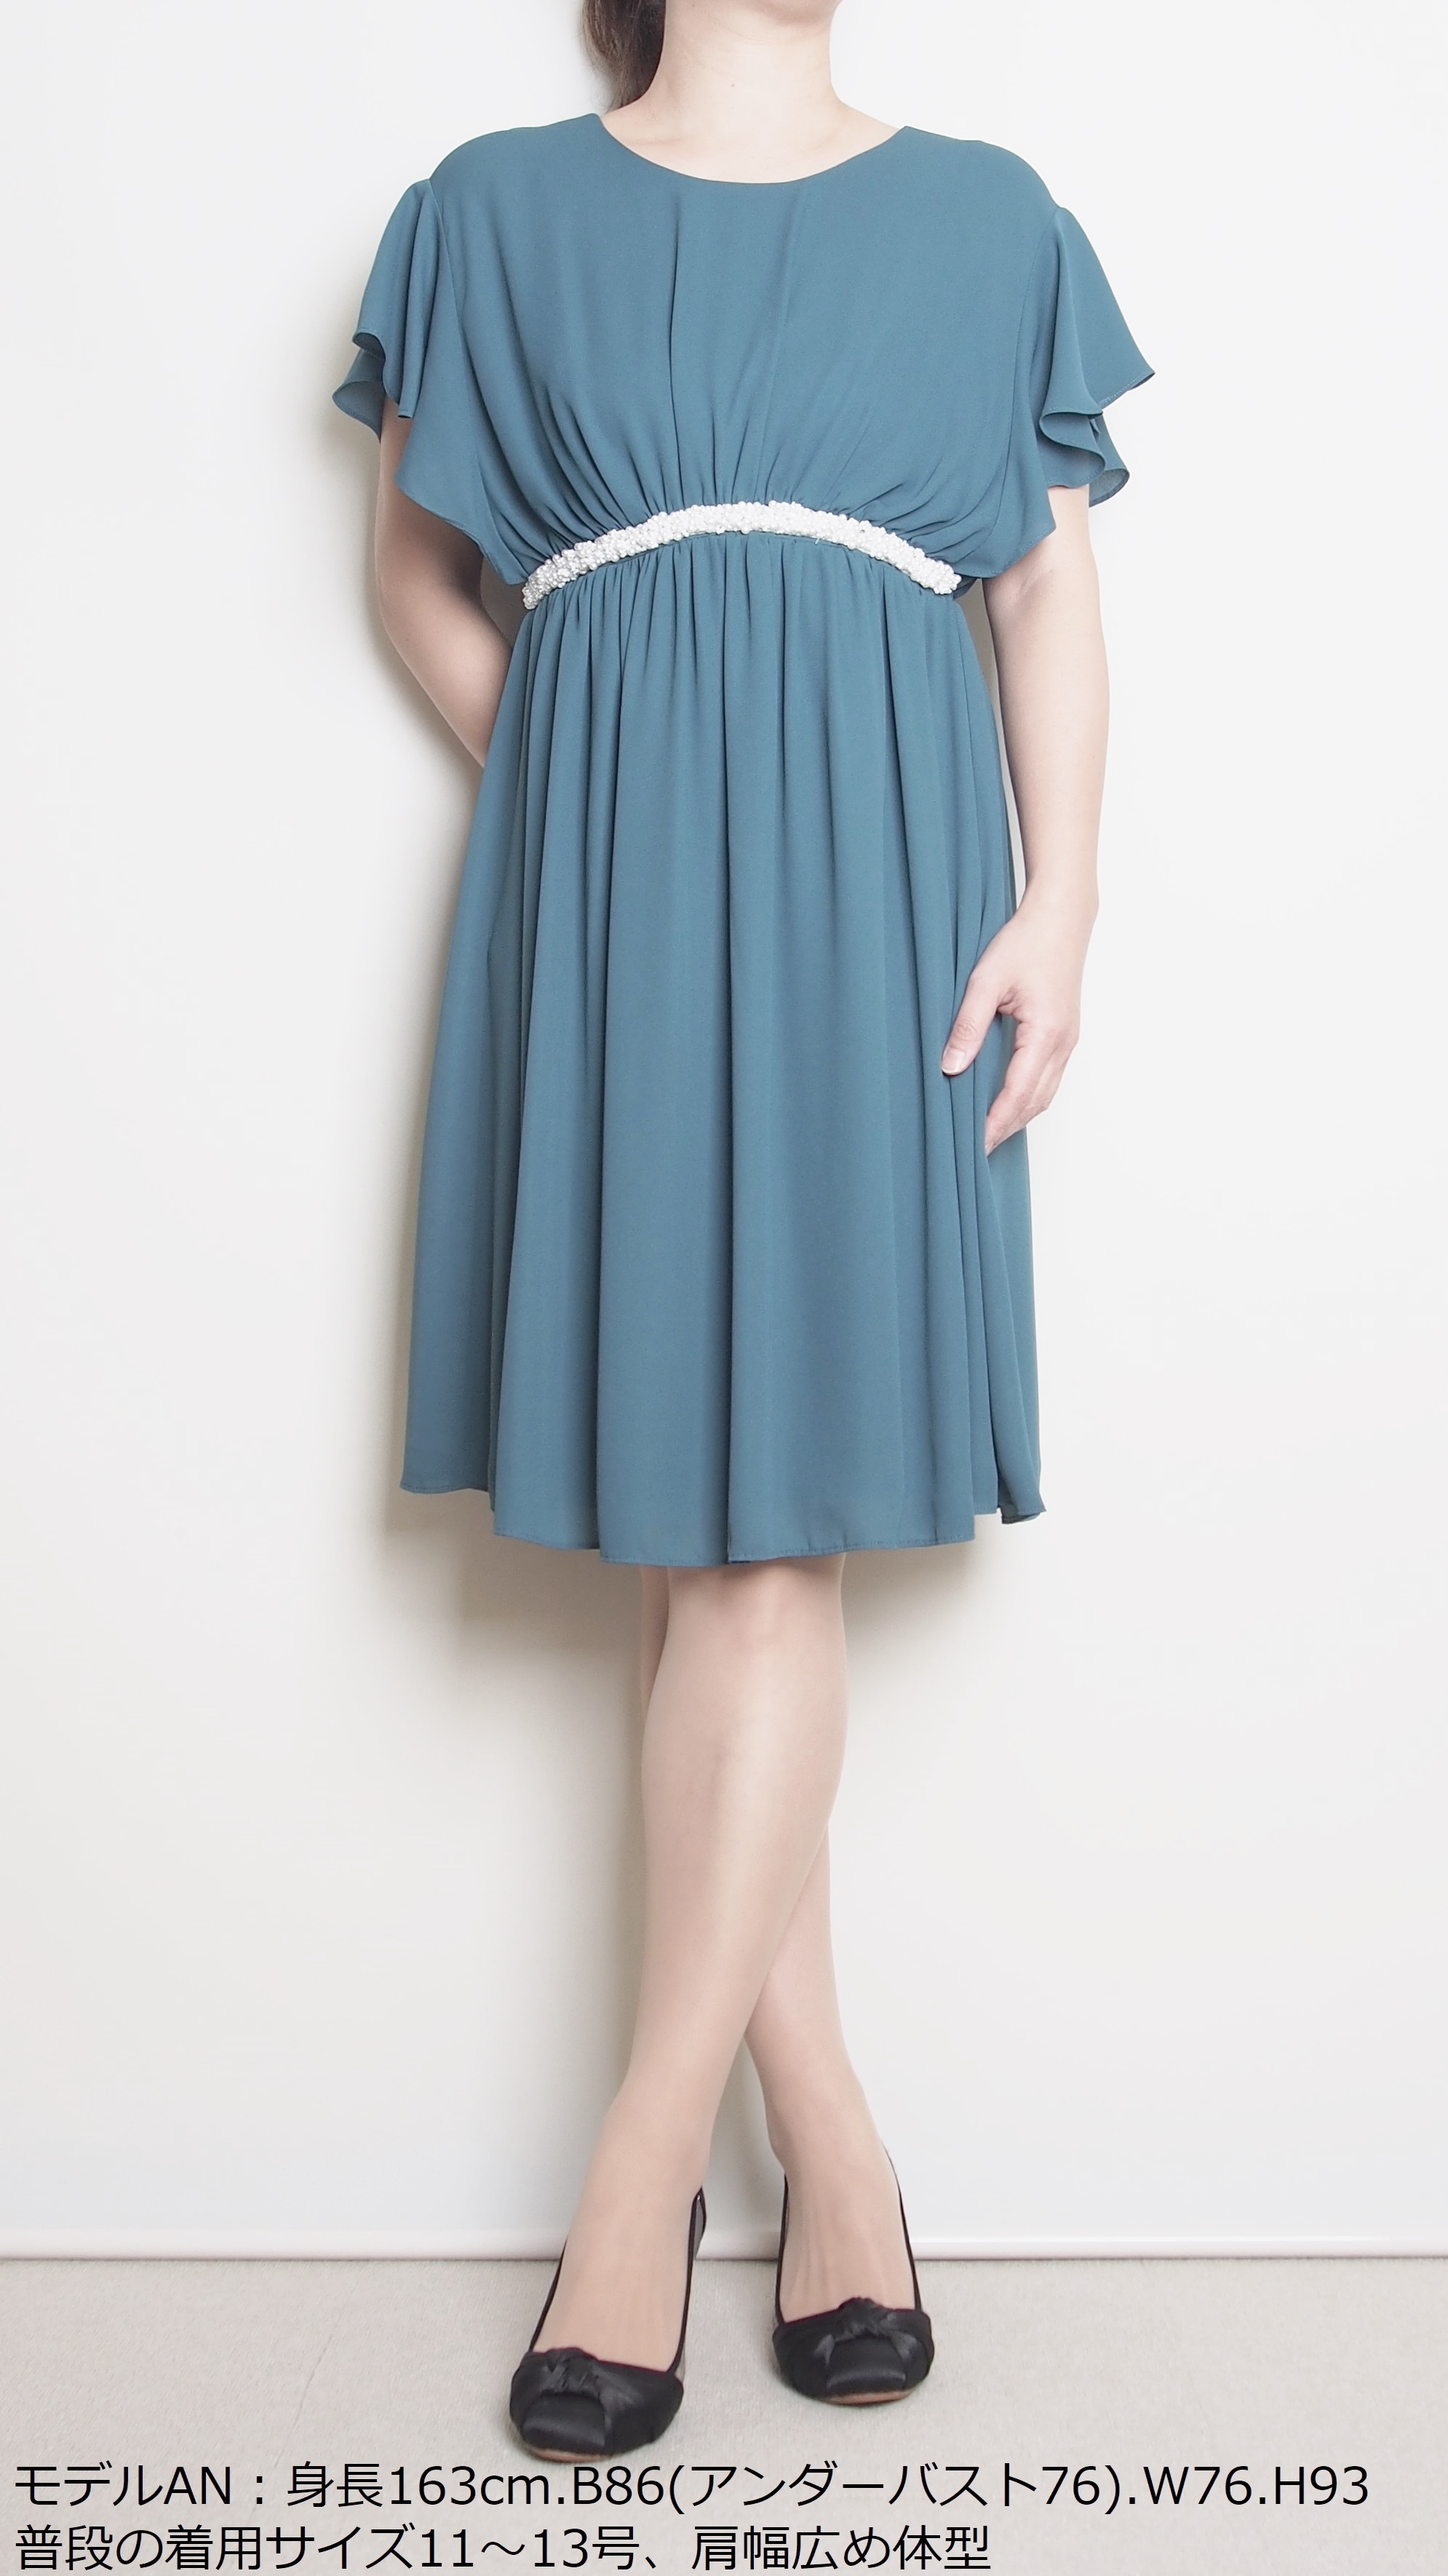 レンタルドレスの普段11〜13号サイズ着用の「ぽっちゃりさん」「大柄さん」におすすめのドレス